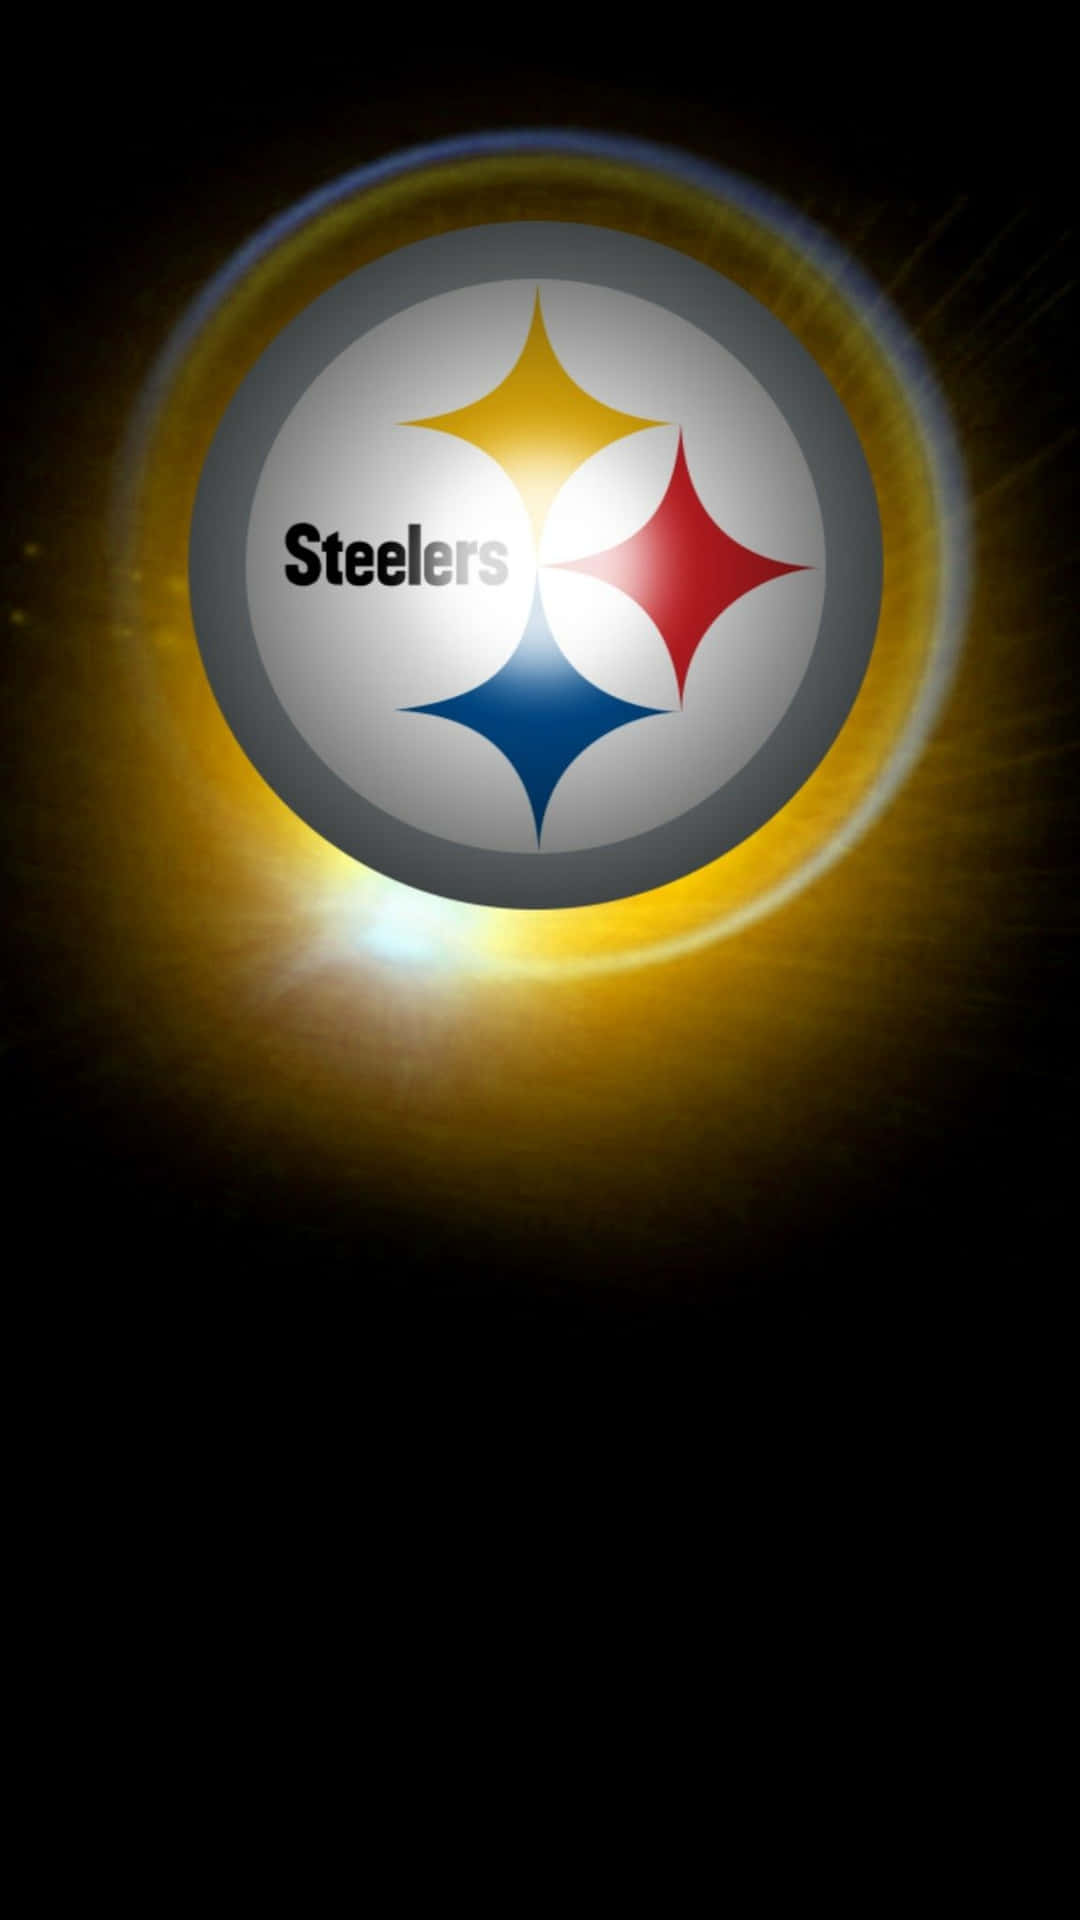 Steelers Logo 1152 X 2048 Wallpaper